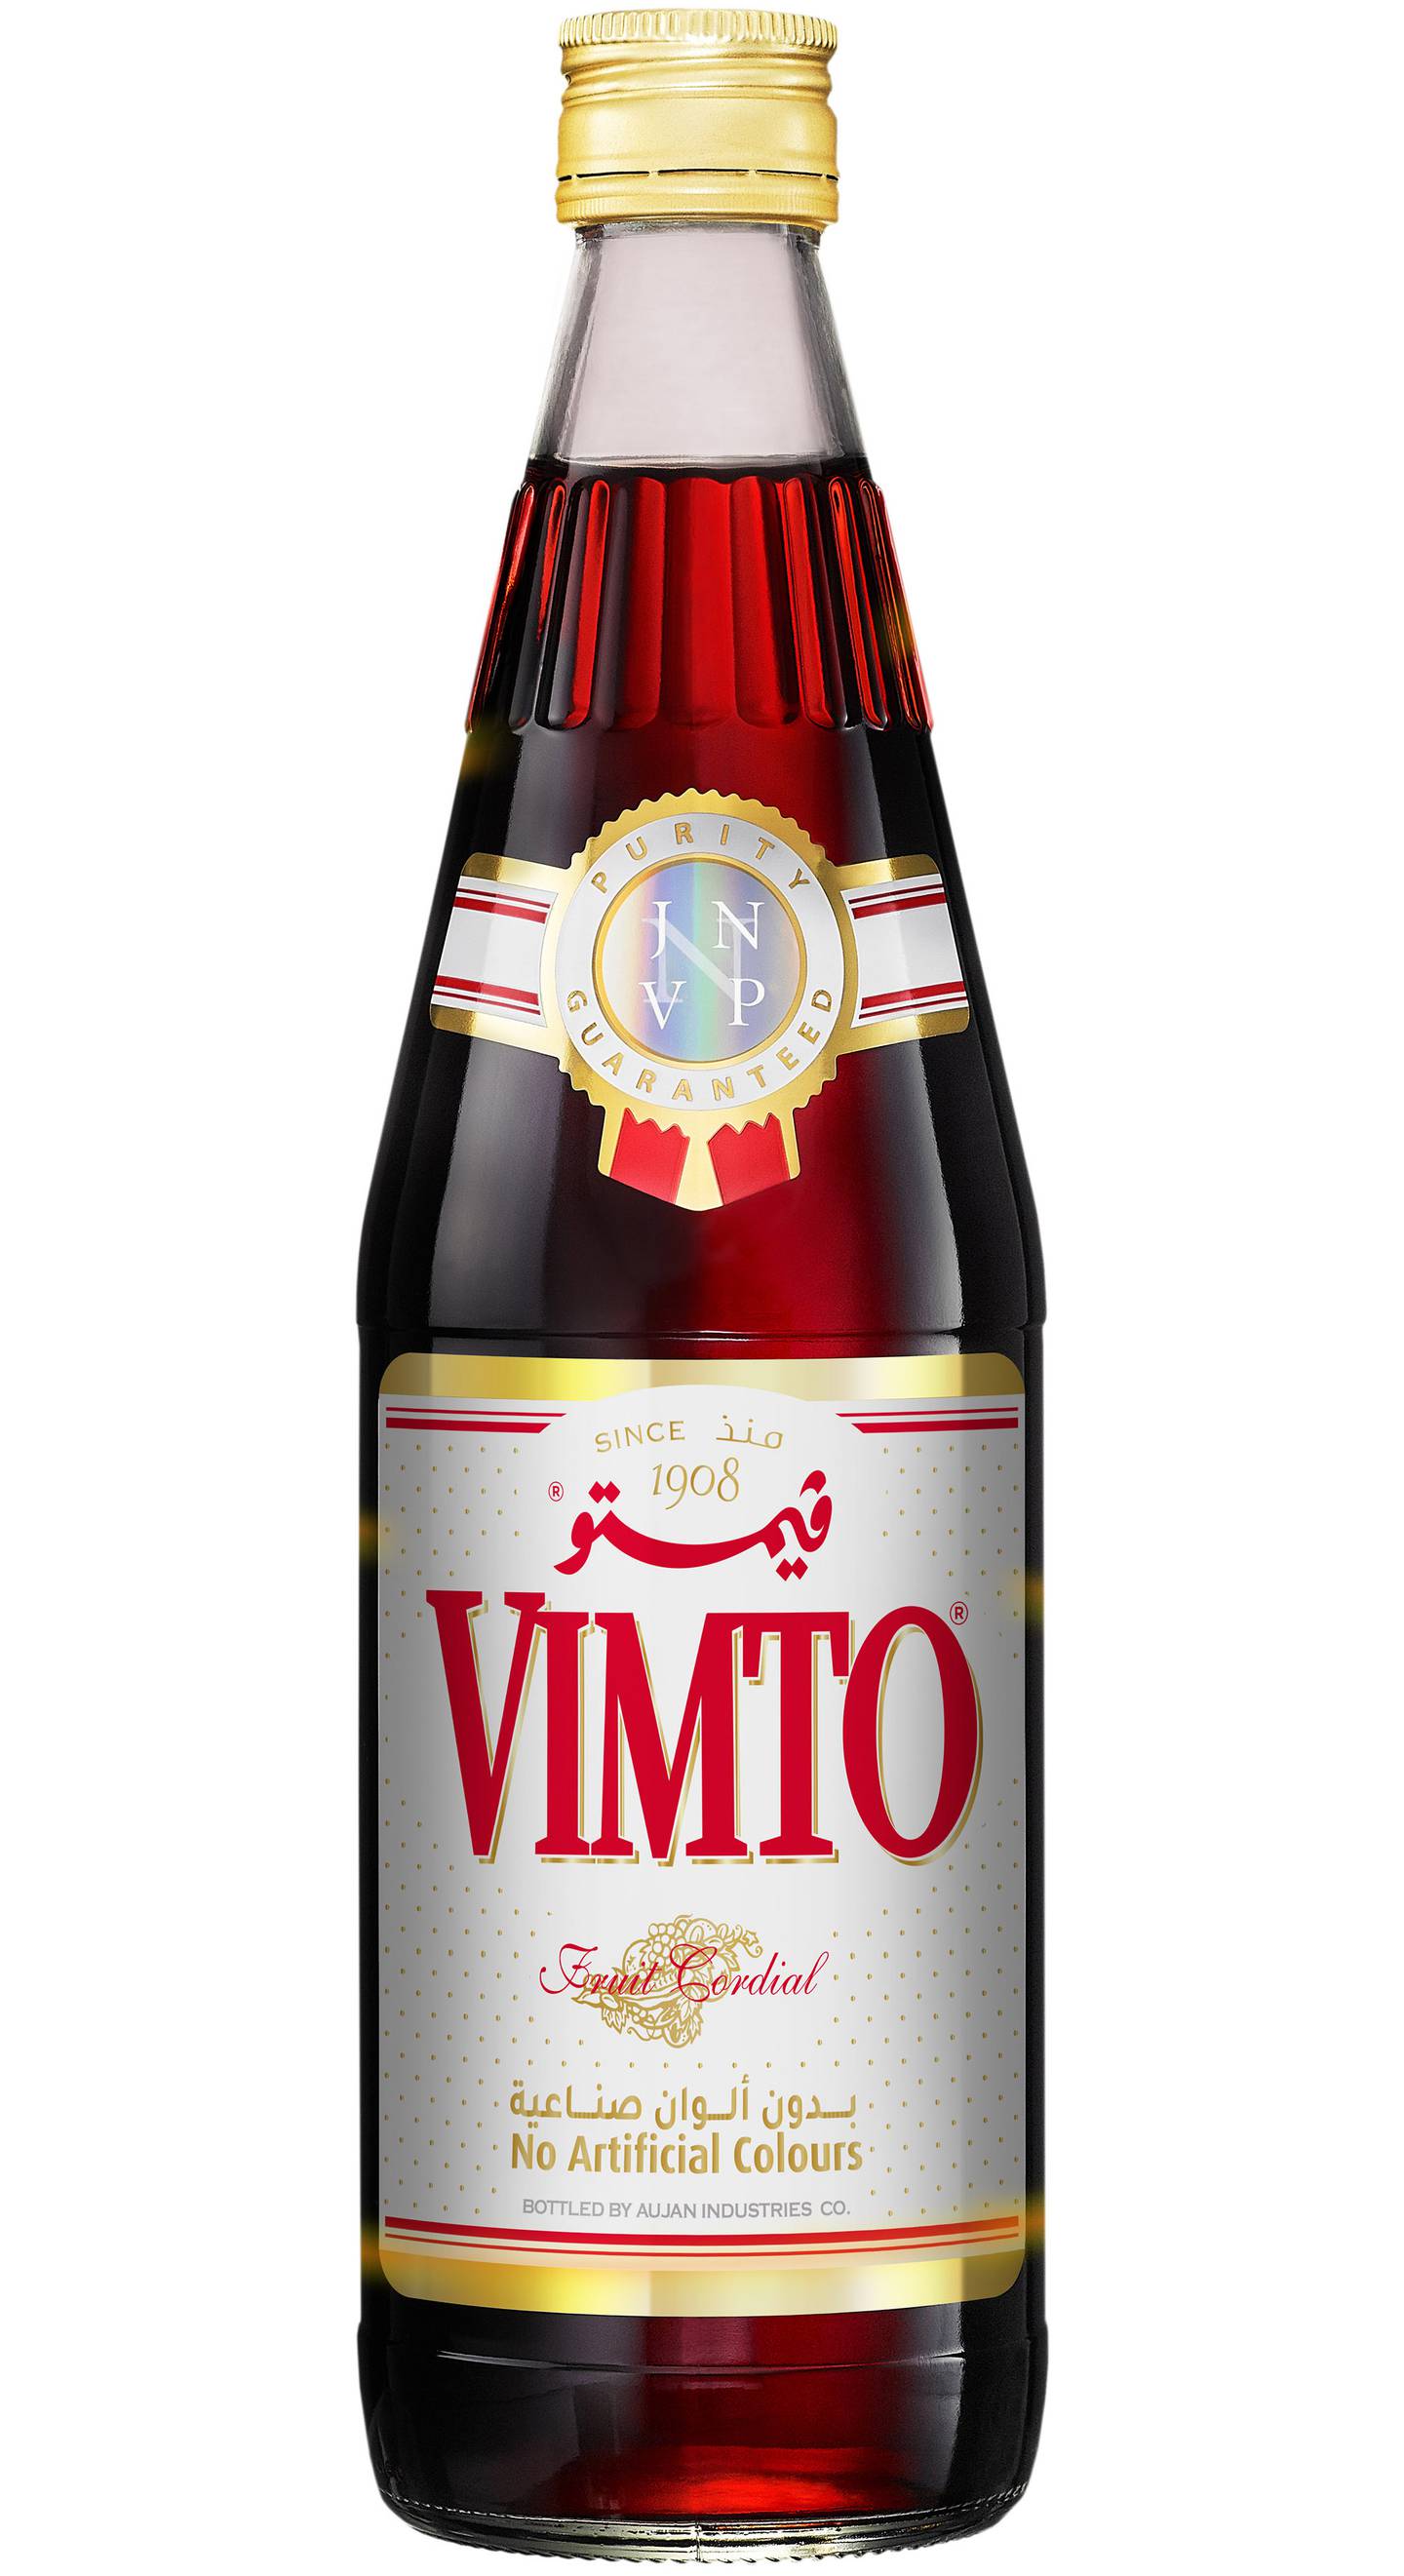 Vimto bottle. Photo: Aujan Industries LLC